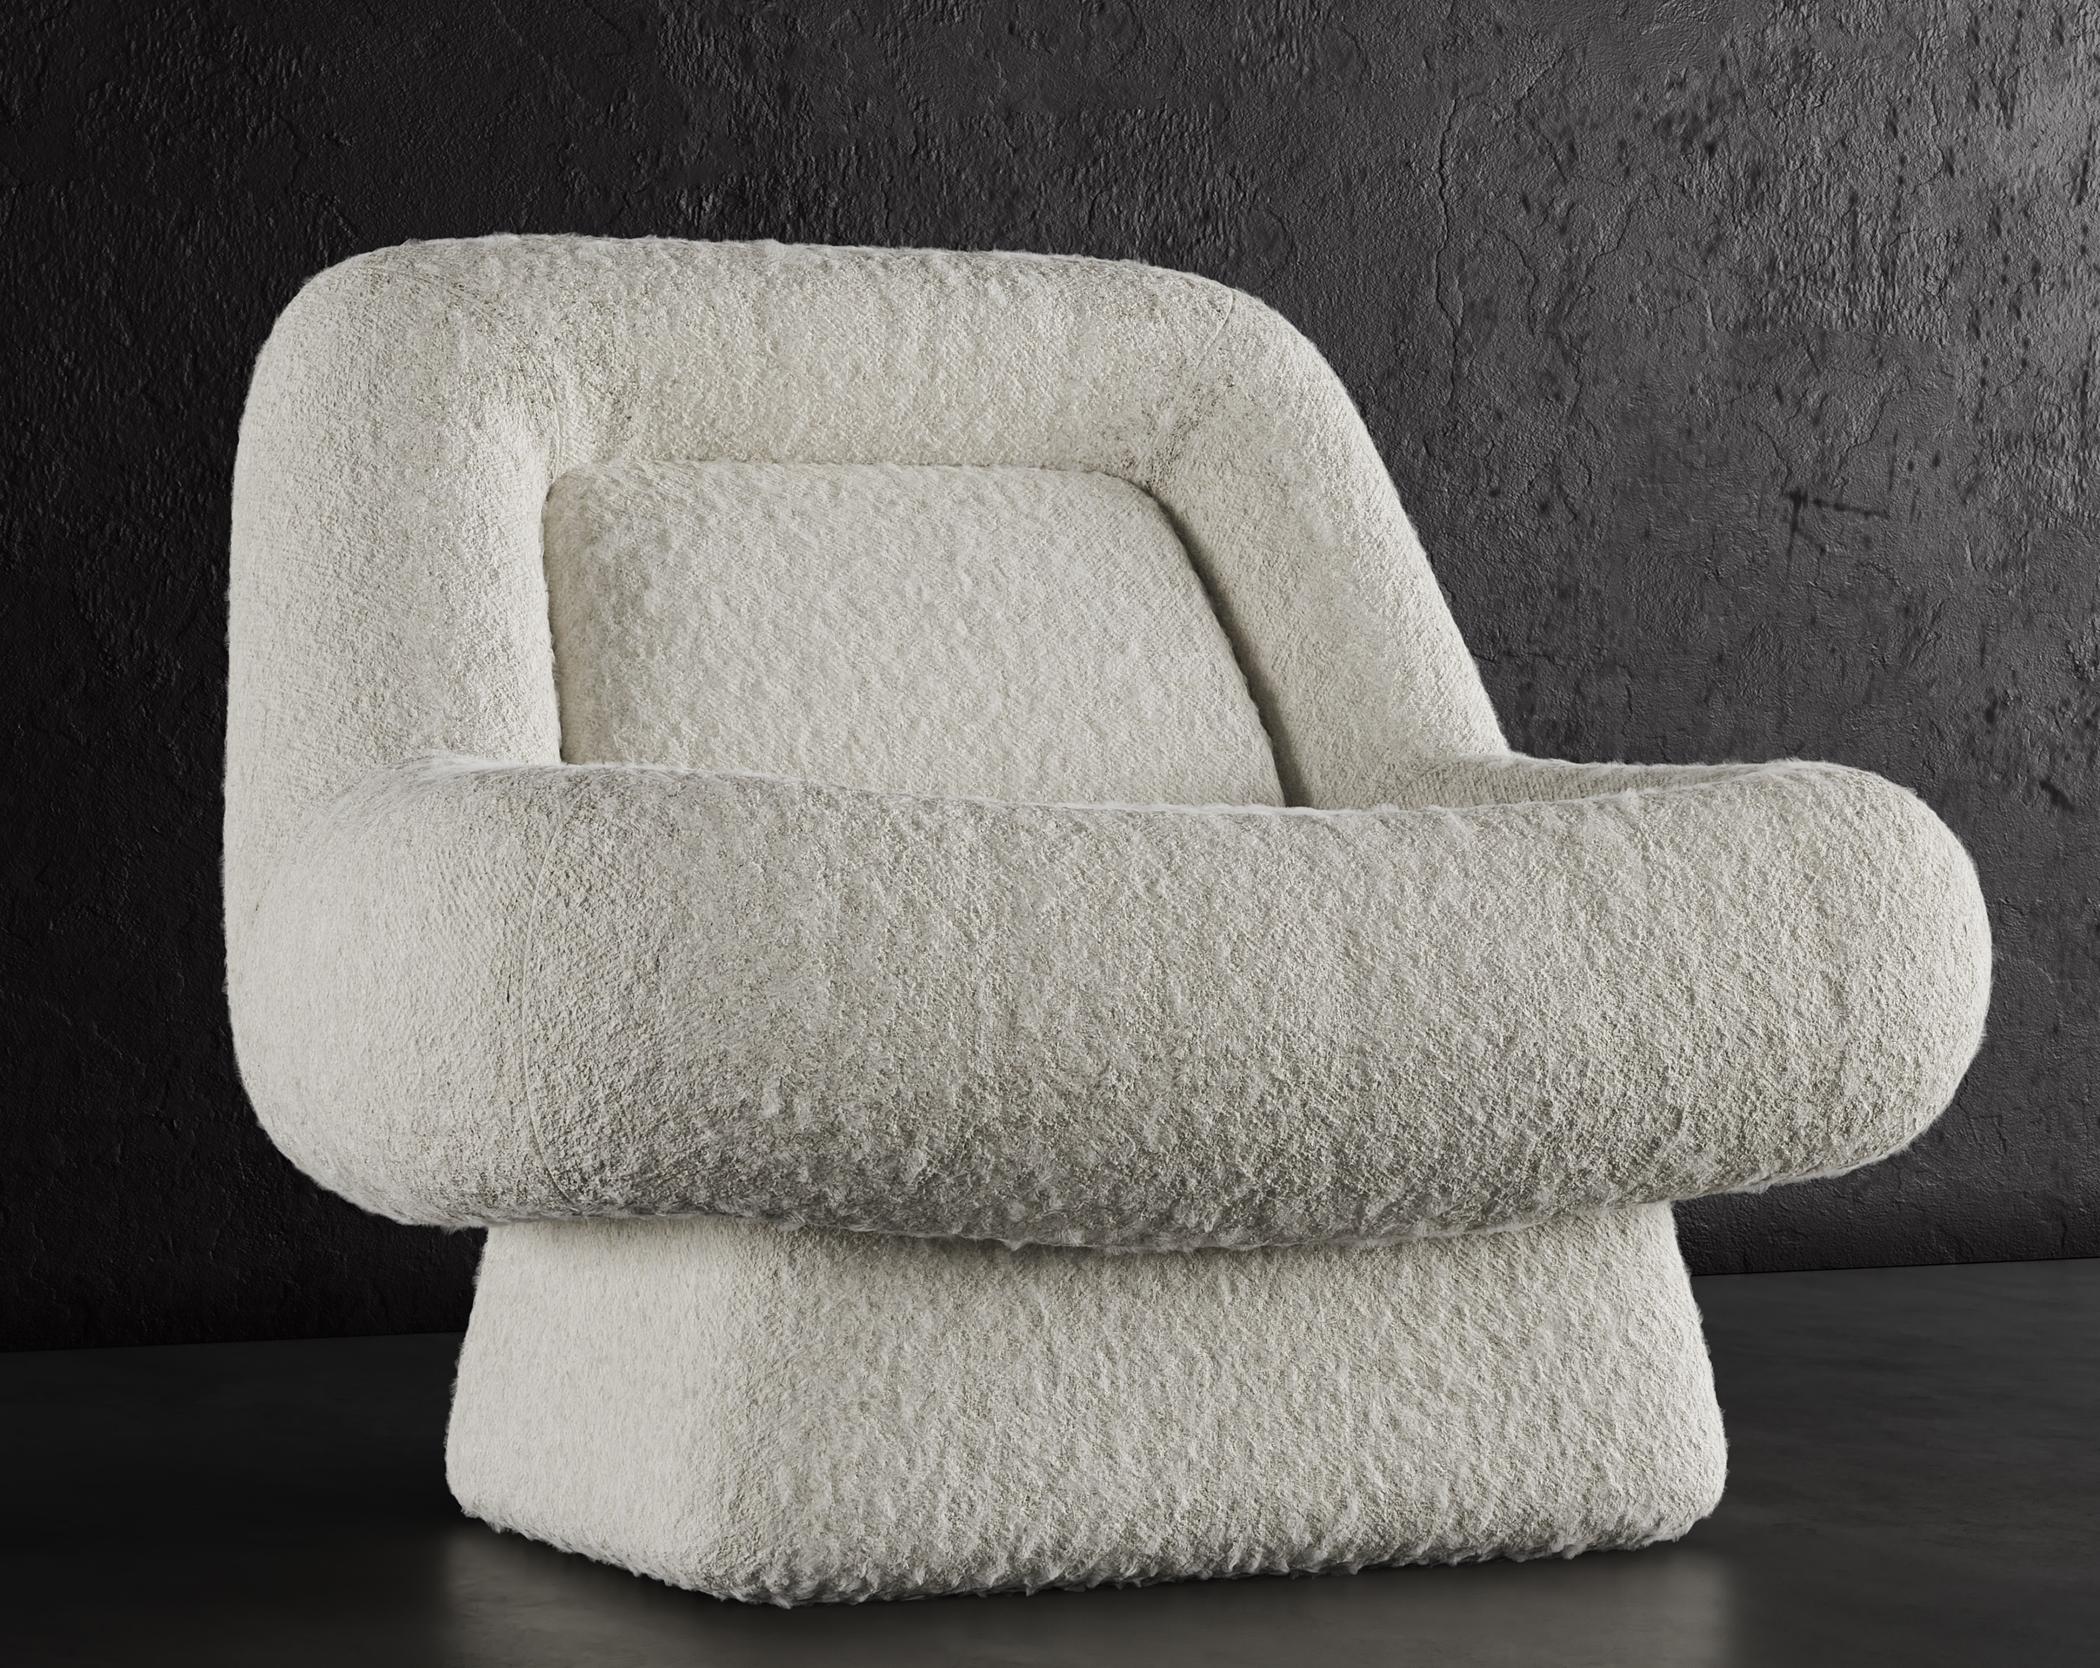 WAVE CHAIR – modernes Design in warmem Weiß mit Wolken Boucle

Der Wave Lounge Chair ist ein modernes und stilvolles Möbelstück, das jedem Raum einen Hauch von Eleganz verleiht. Er ist mit einem luxuriösen Cloud-Boucle-Stoff in warmem Weiß